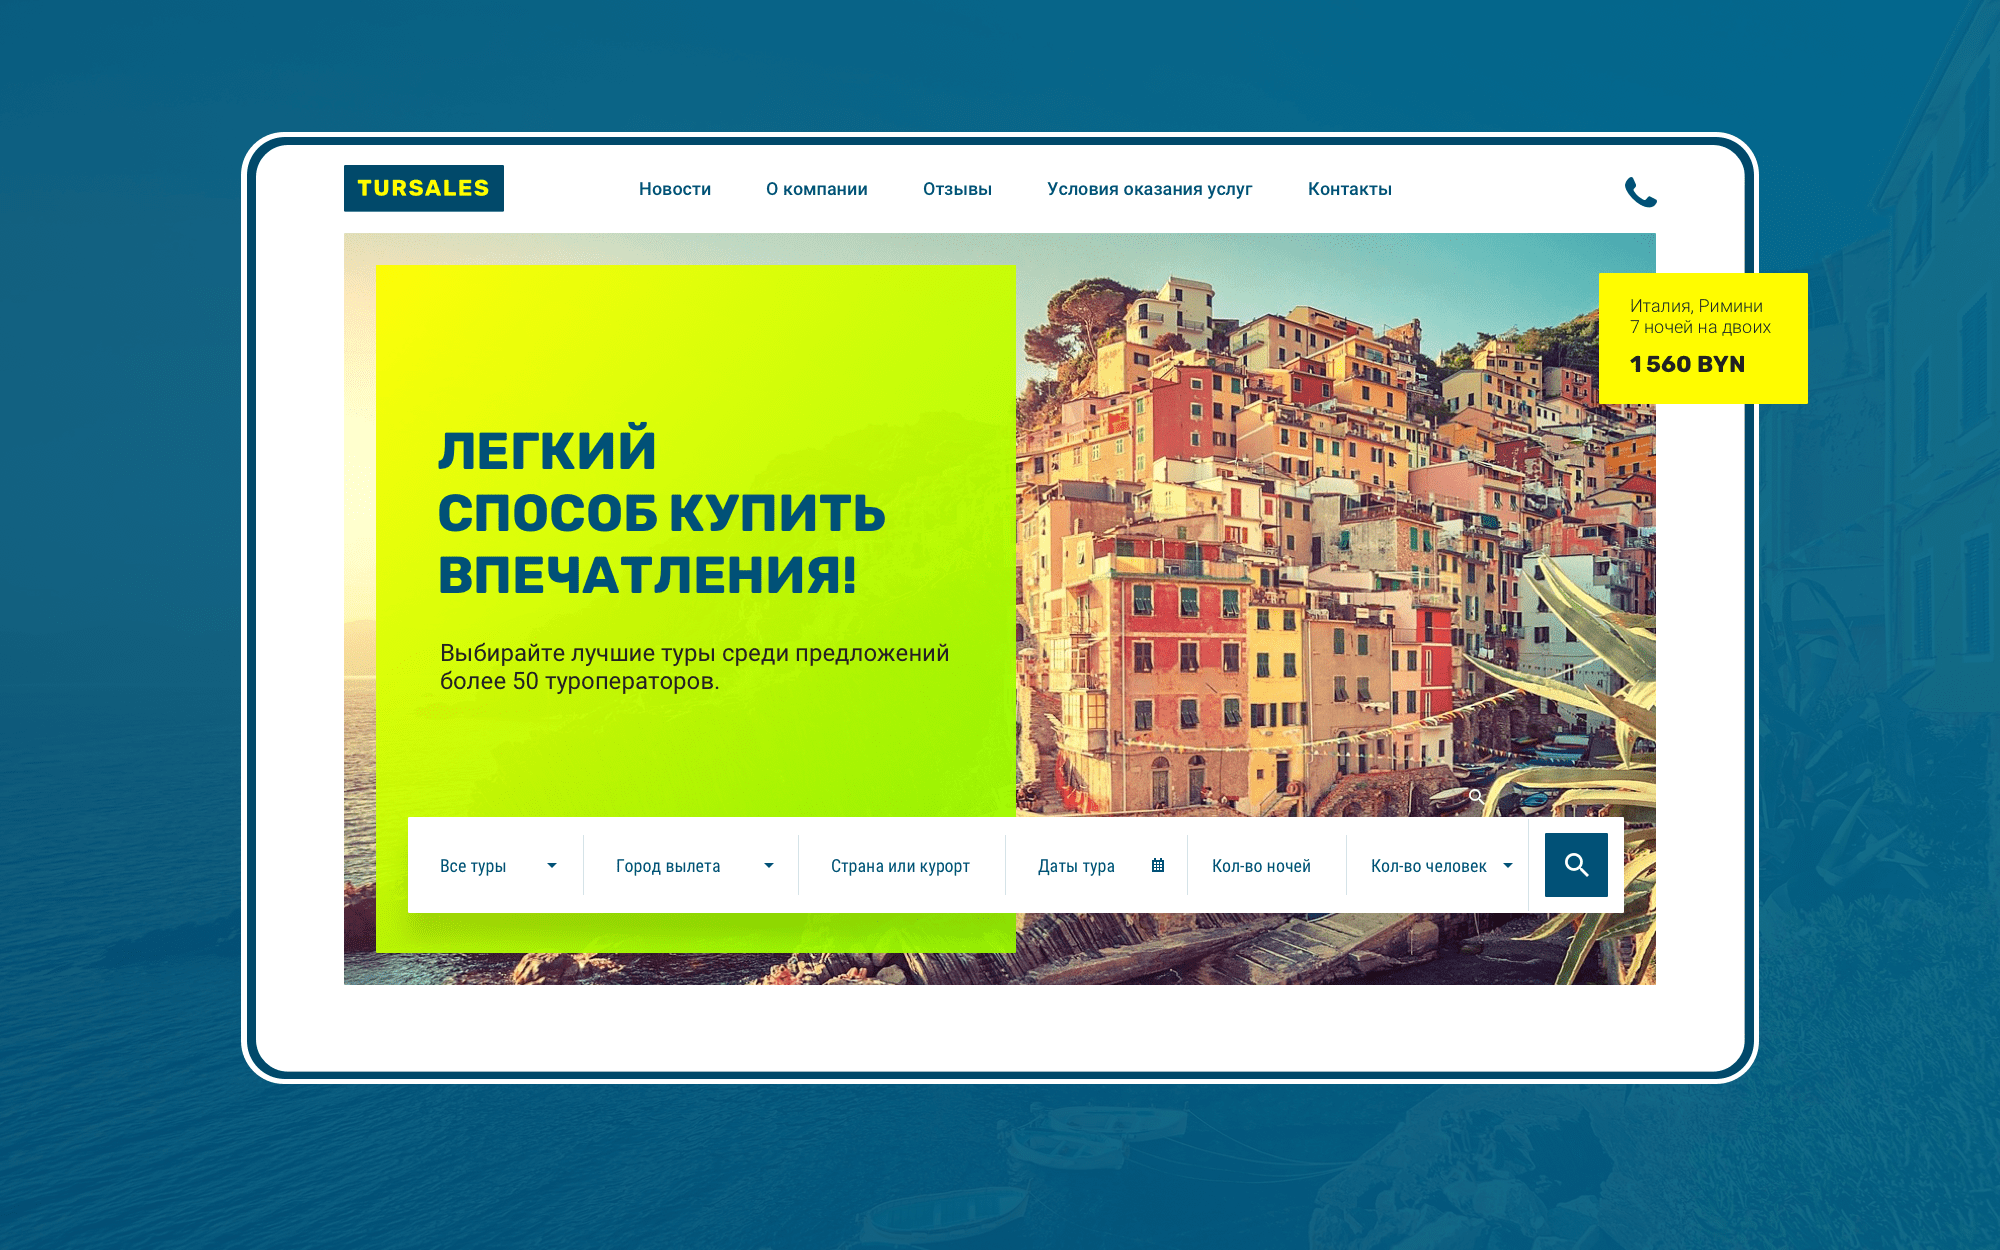 Создание интерфейса сайта туристической компании